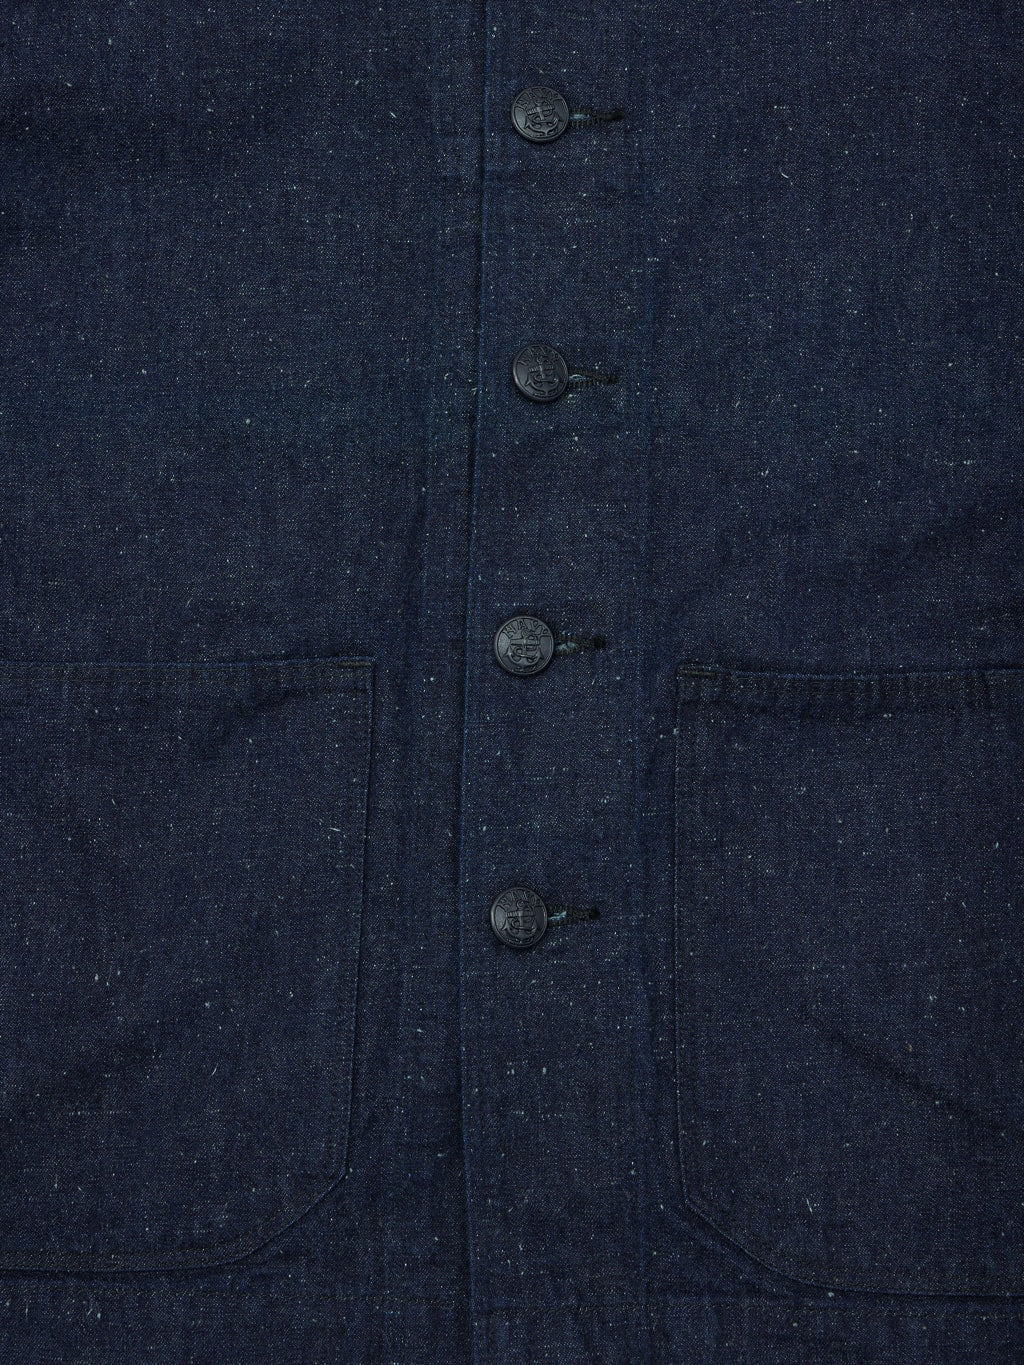 tcb usn vintage navy seamens jacket texture